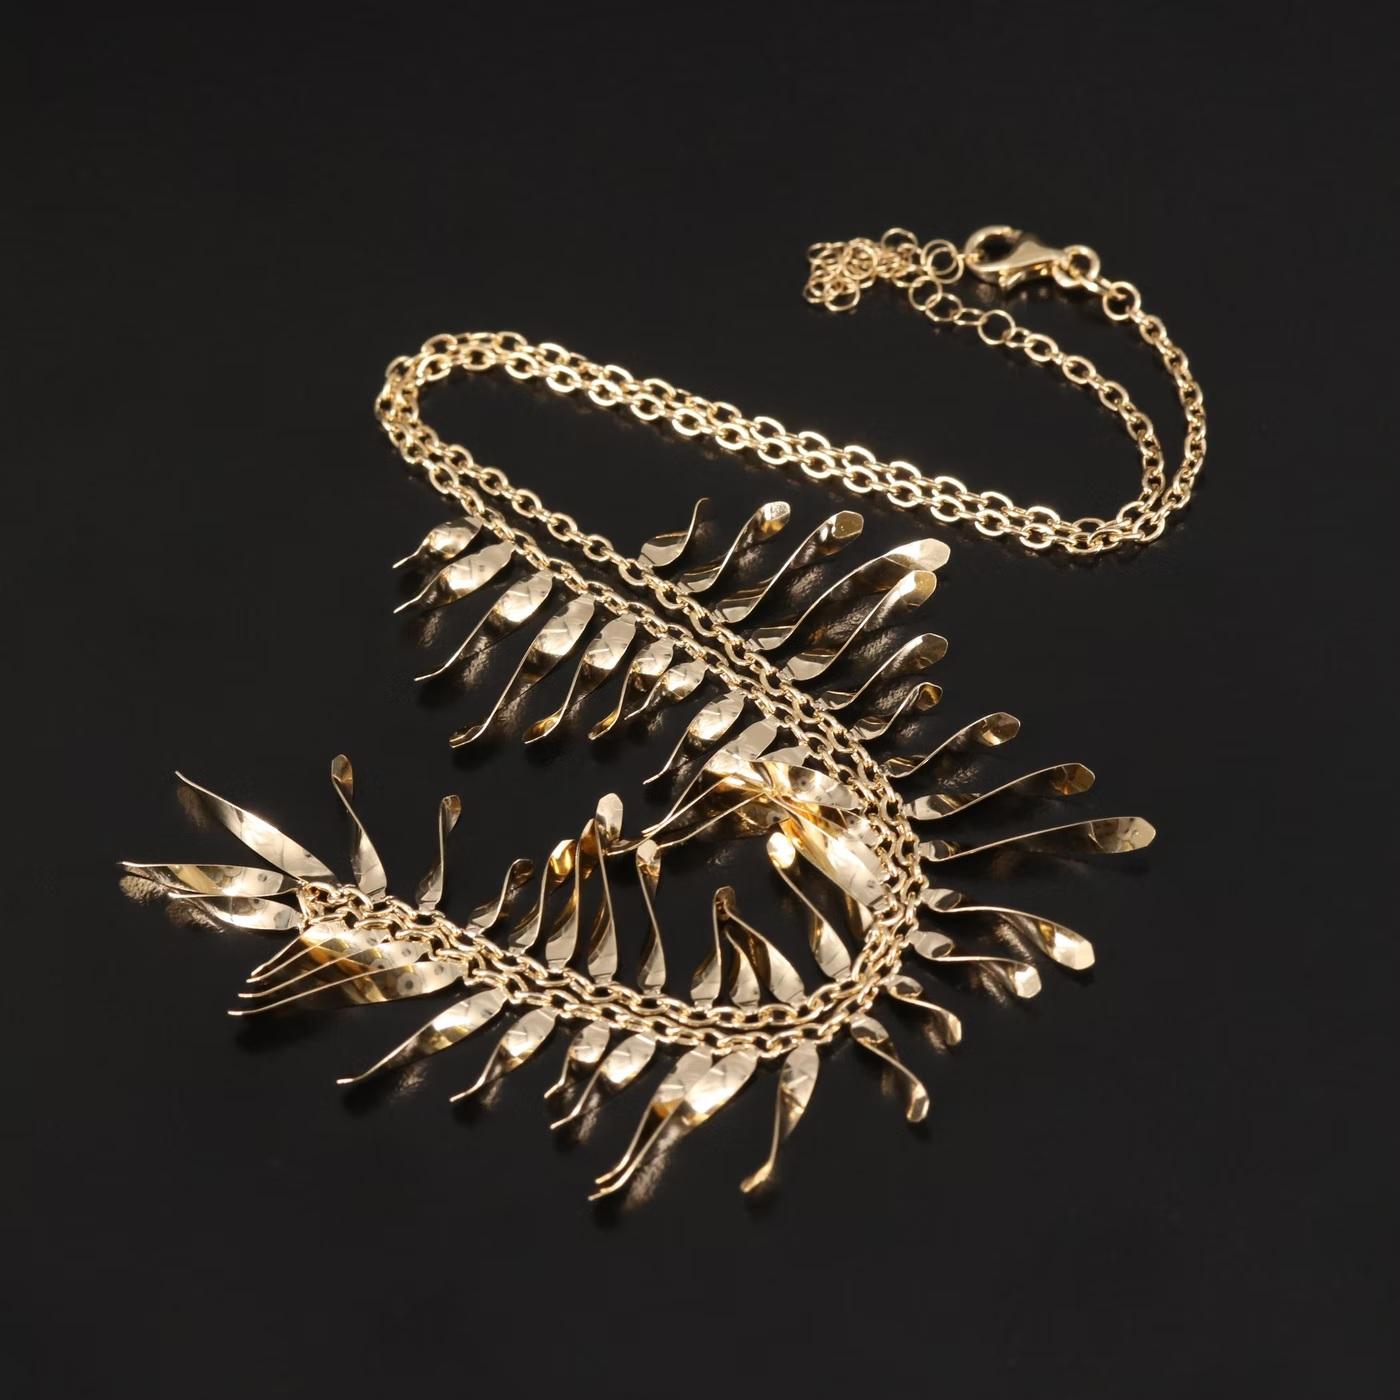 $2950 / Italy Designer Top Quality Fringe Necklace / Adjustable / 14K Gold 1